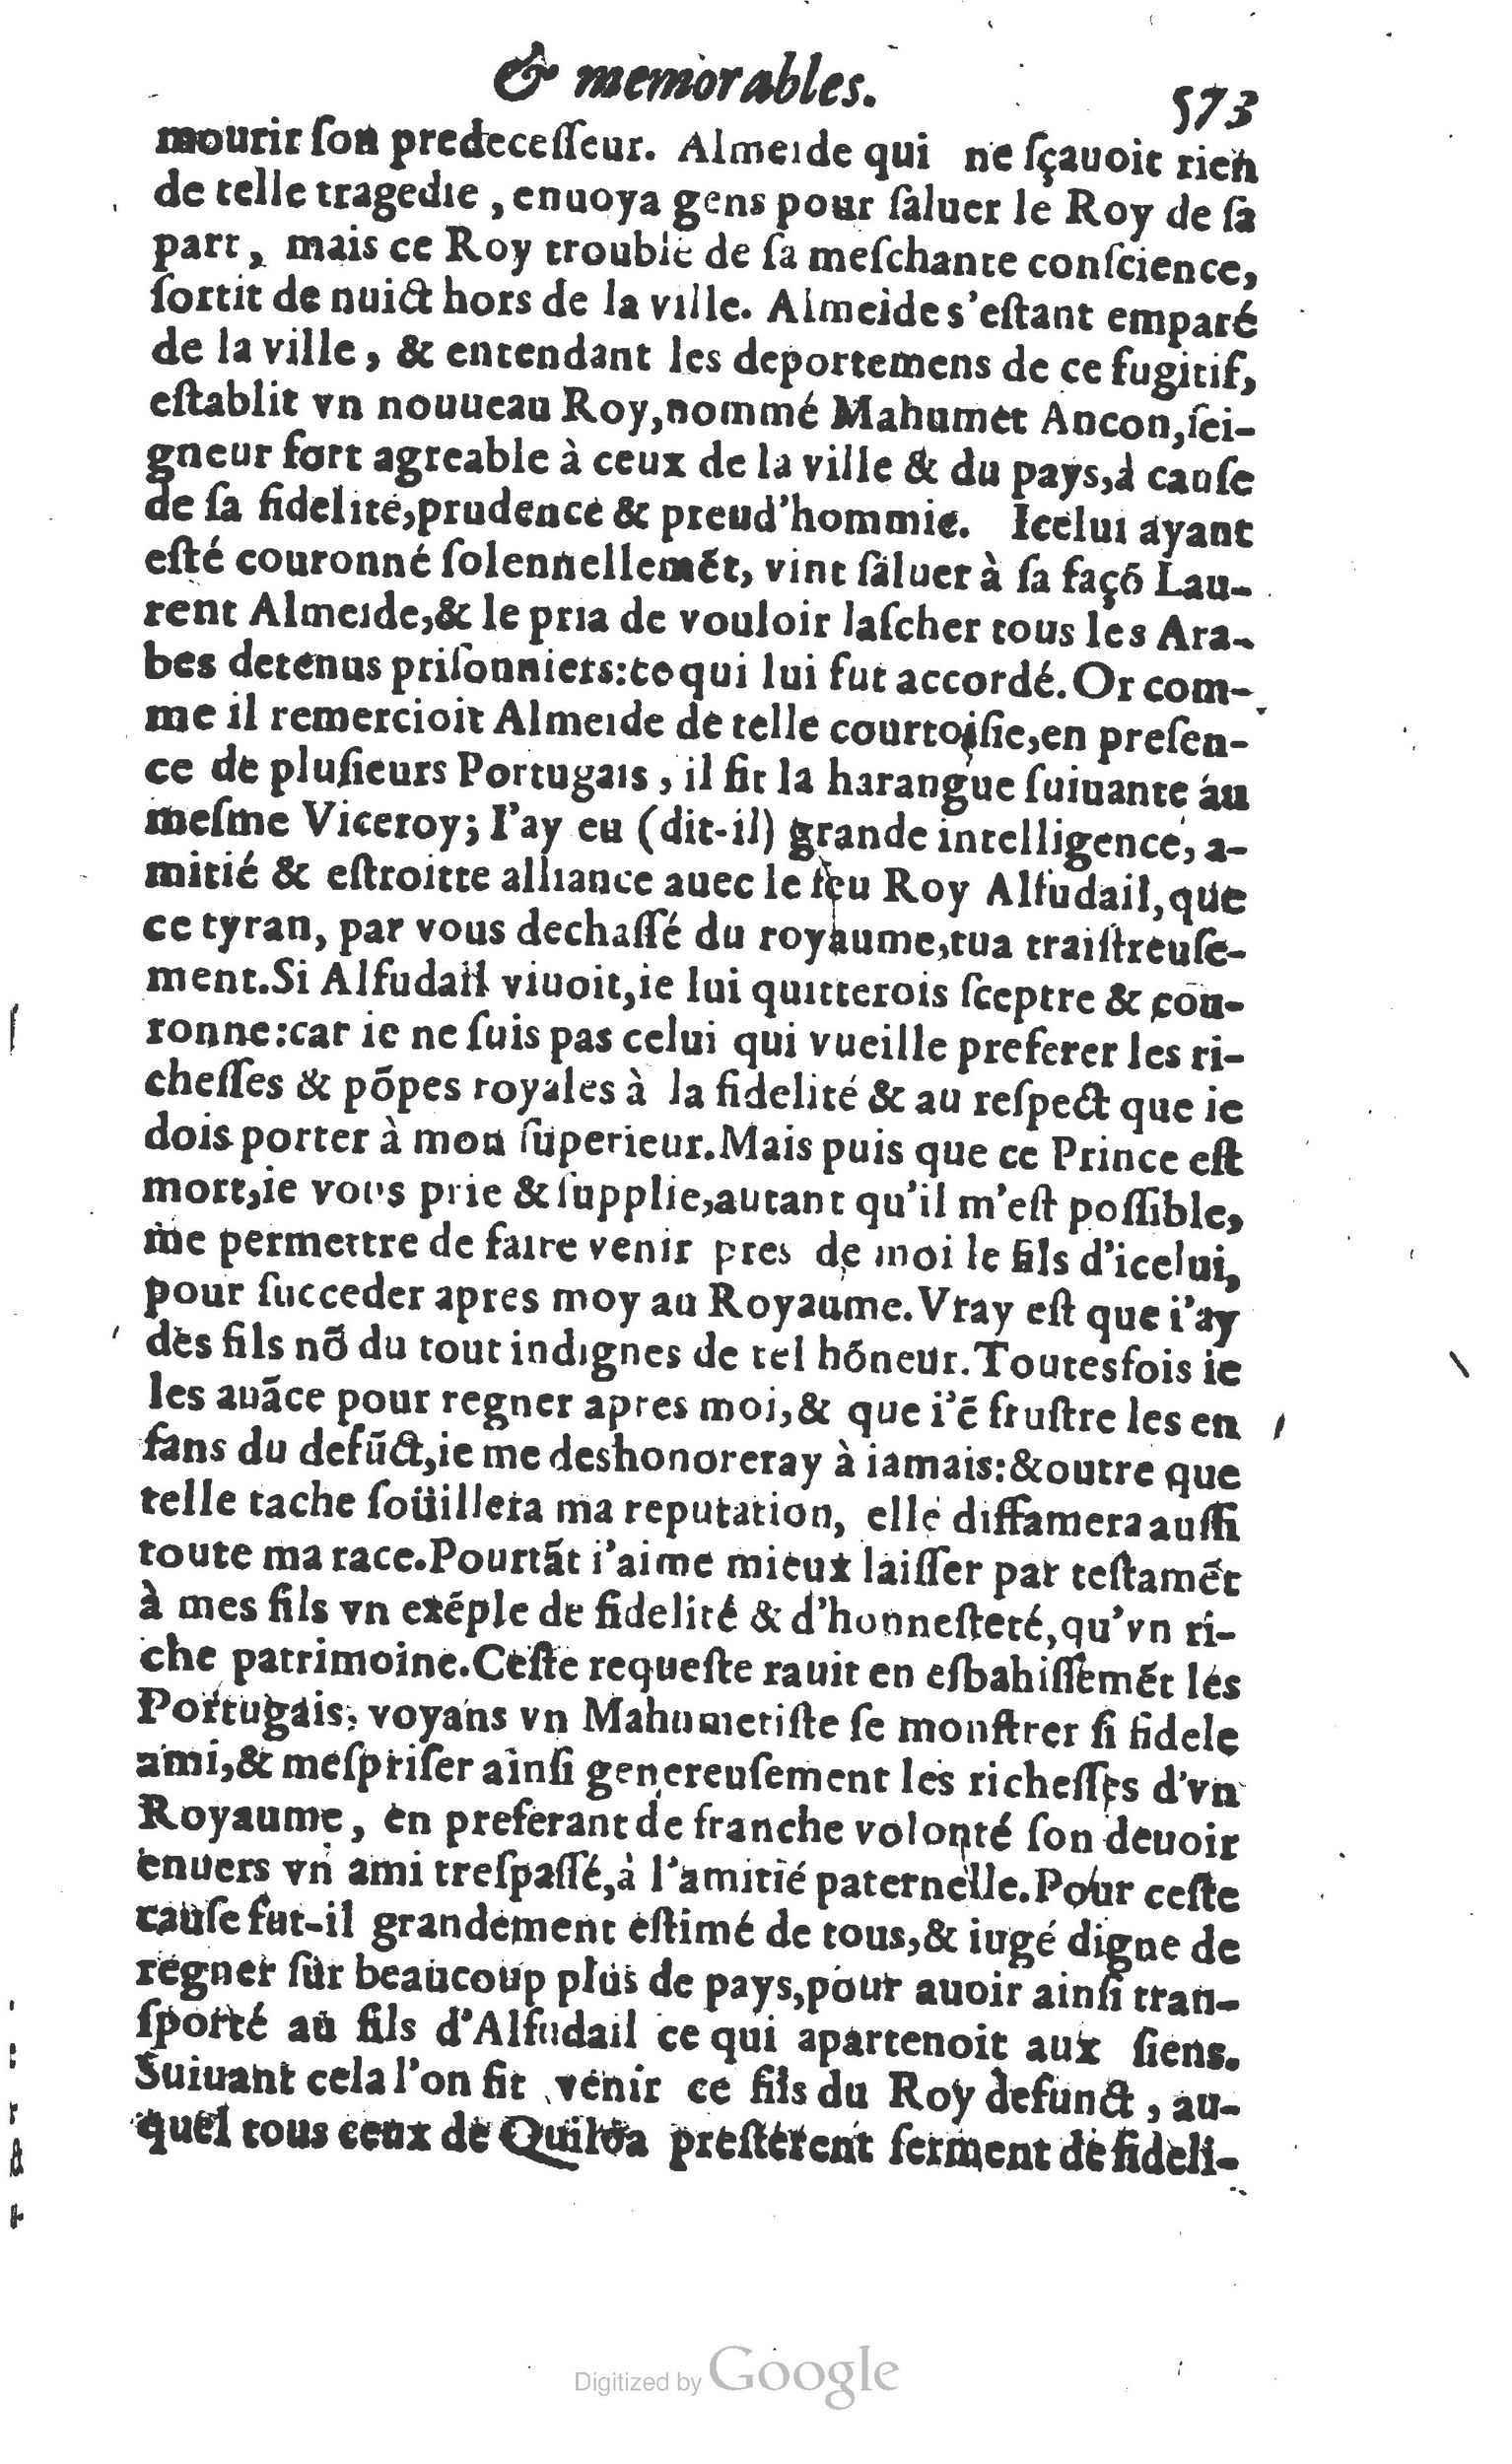 1610 Trésor d’histoires admirables et mémorables de nostre temps Marceau Princeton_Page_0594.jpg